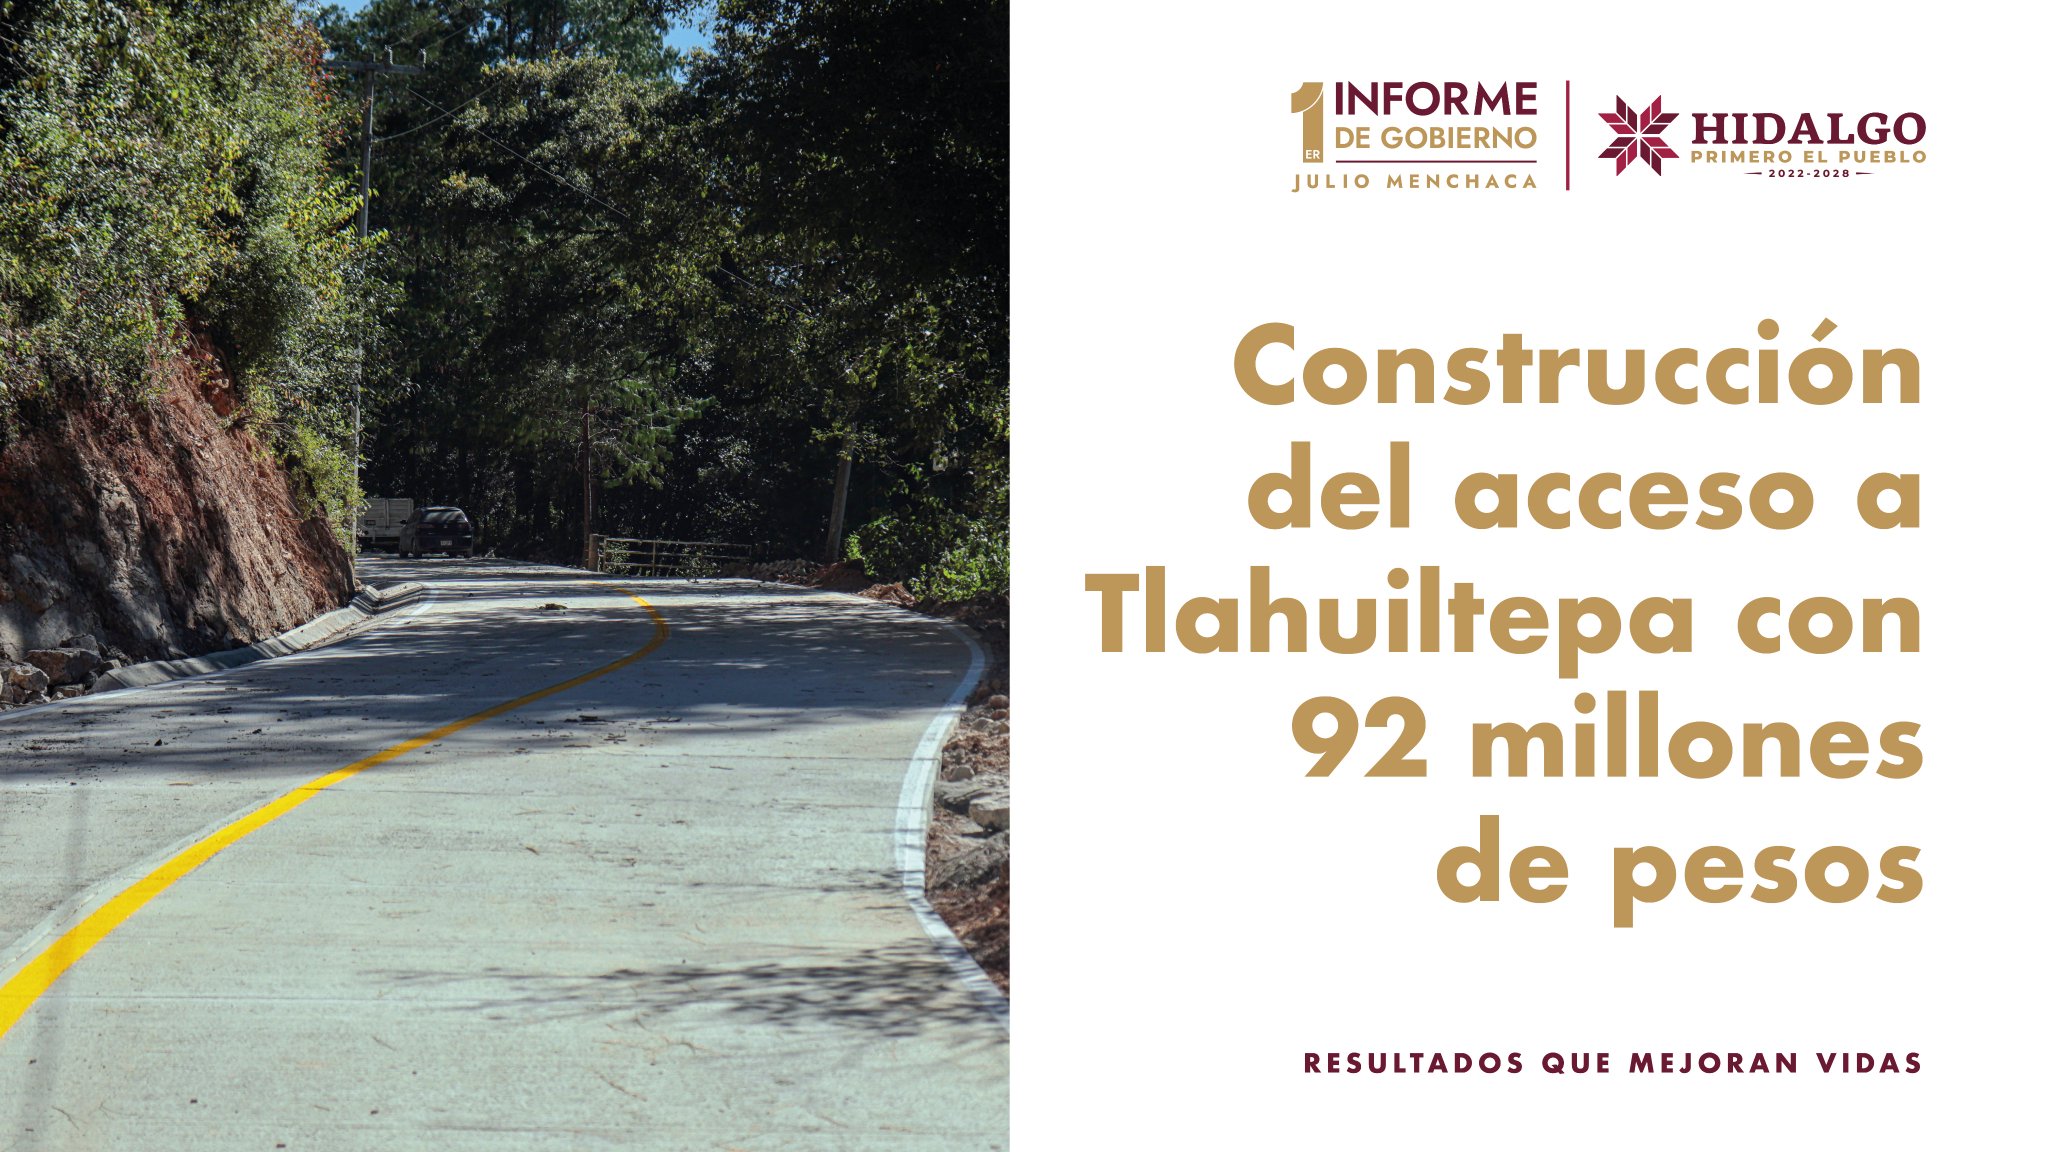 Julio Menchaca on X: "Con la construcción de la carretera en Tlahuiltepa, damos respuesta a una deuda largamente añorada, conectando a sus comunidades más alejadas y facilitando el acceso a servicios de salud, educación y desarrollo económico ...